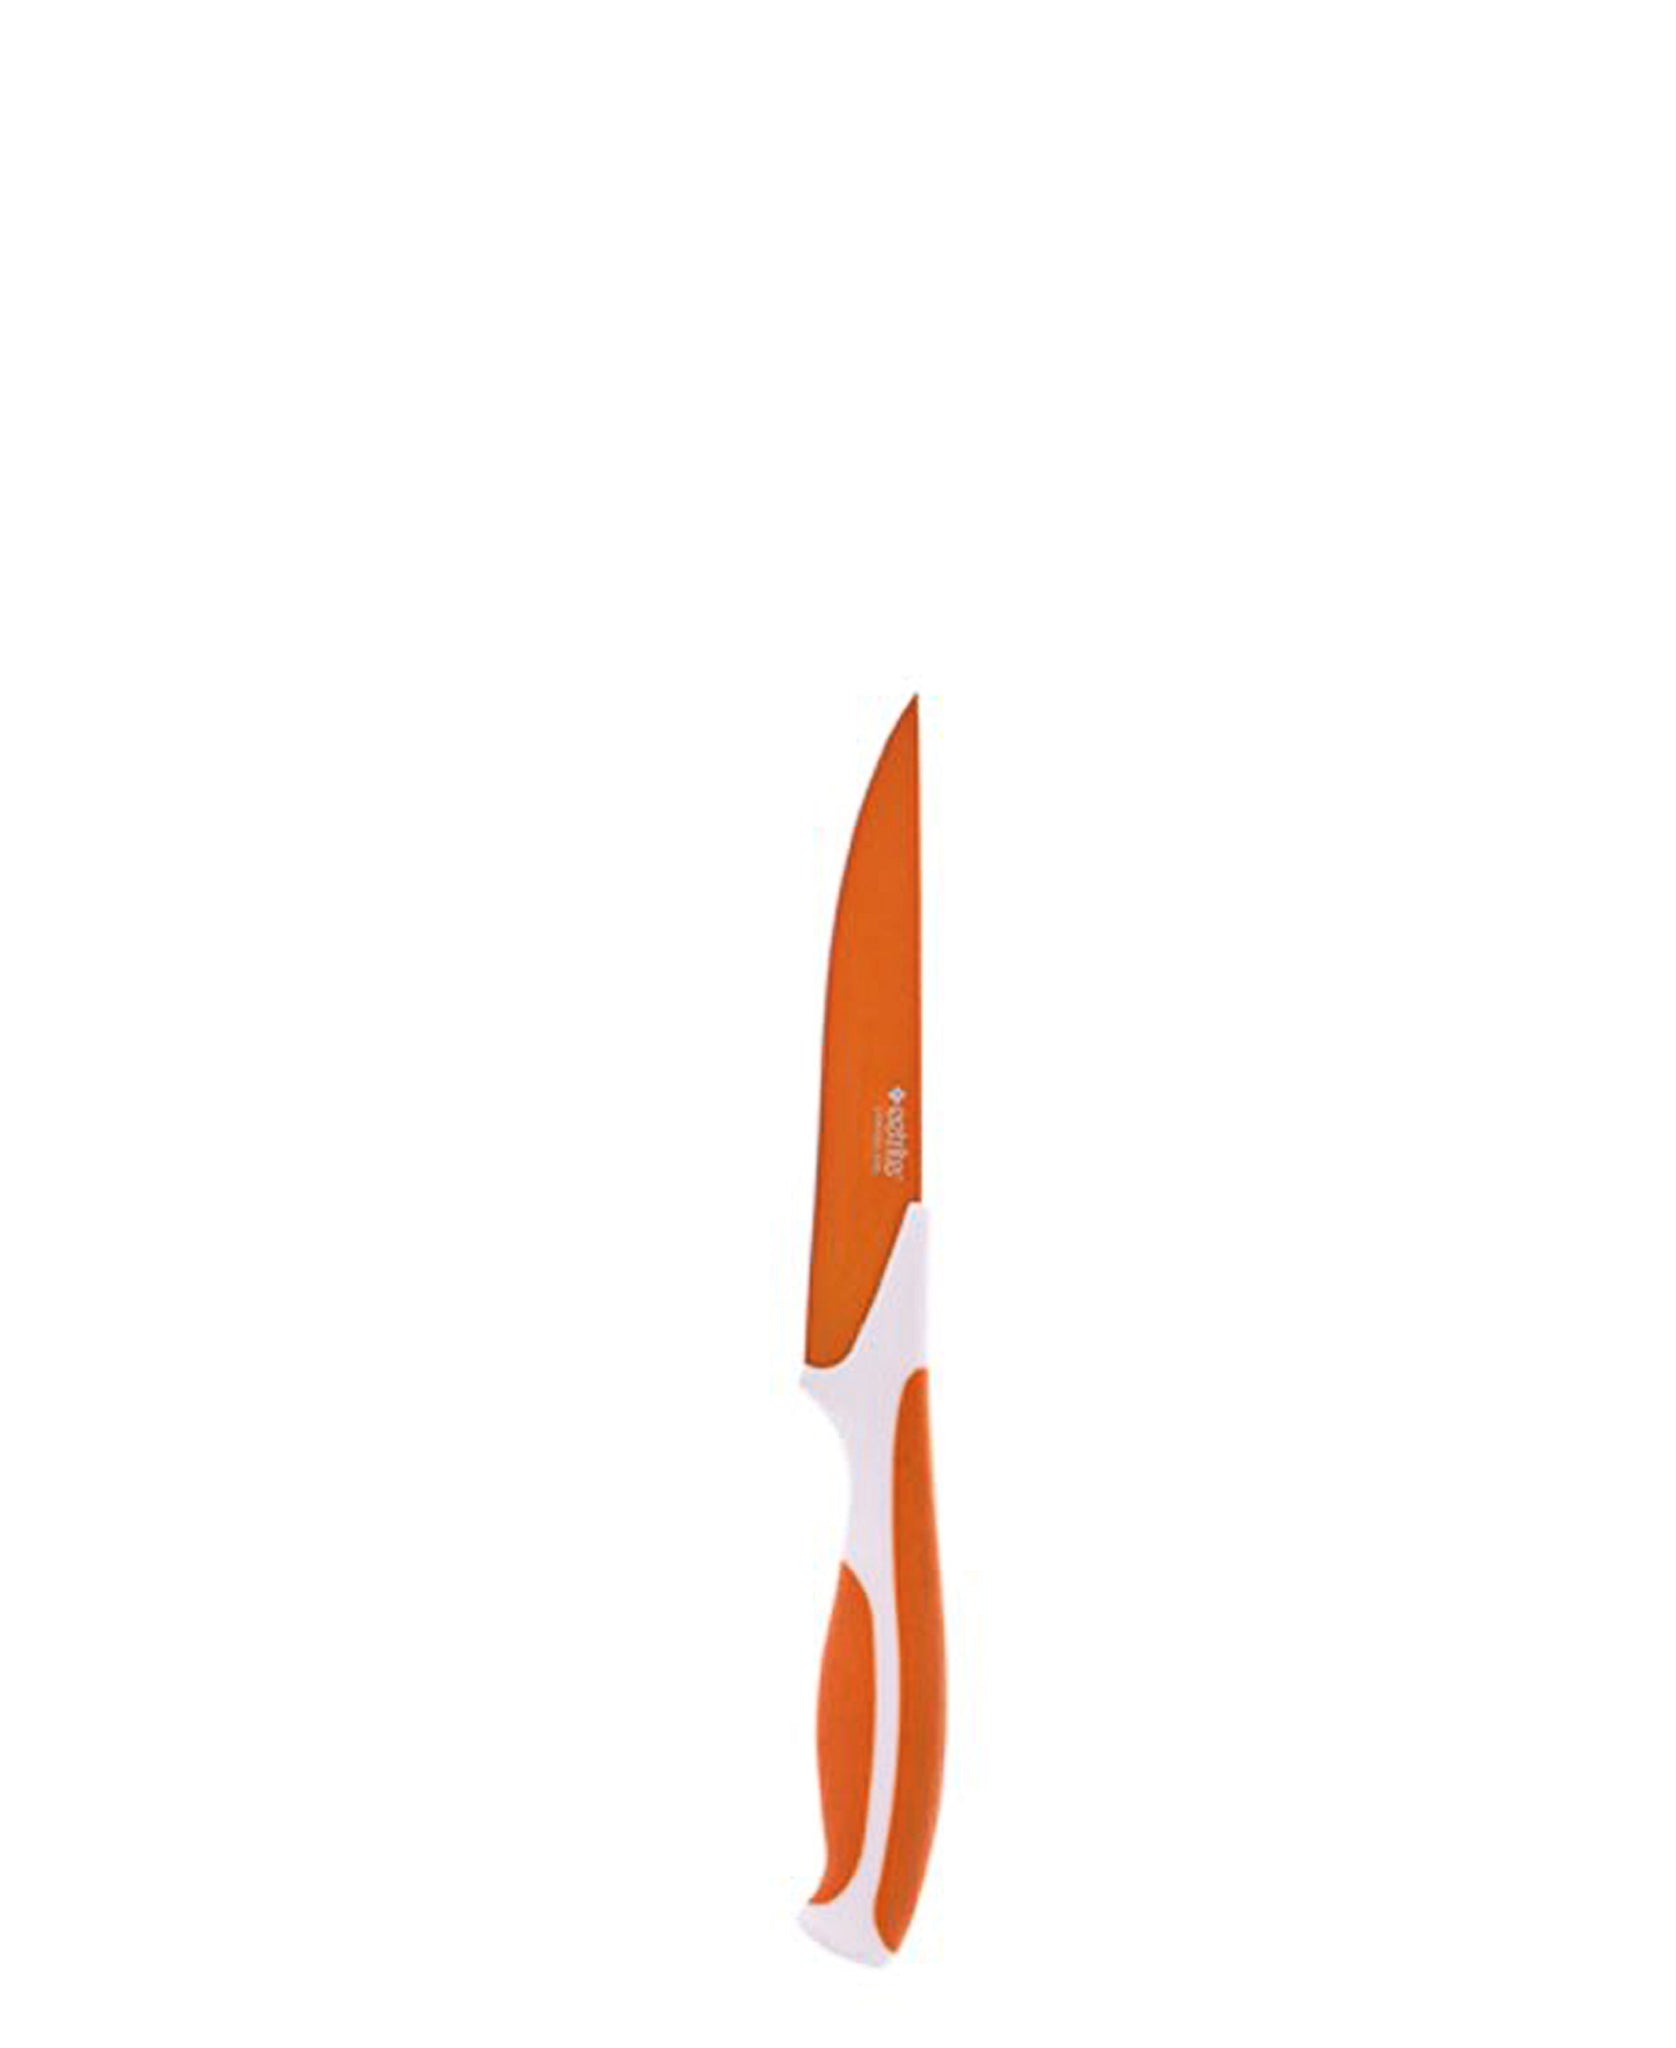 Eetrite Utility Knife - Orange